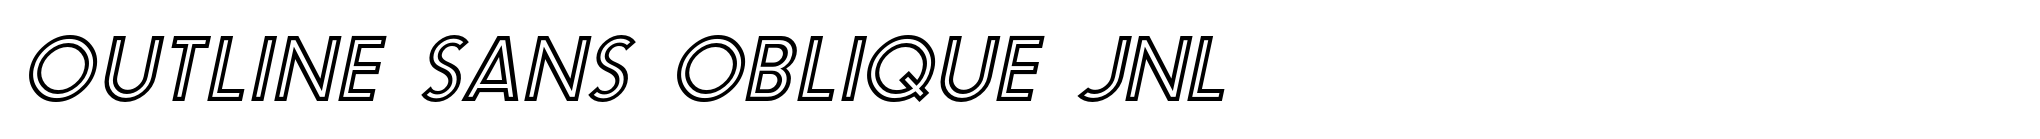 Outline Sans Oblique JNL image